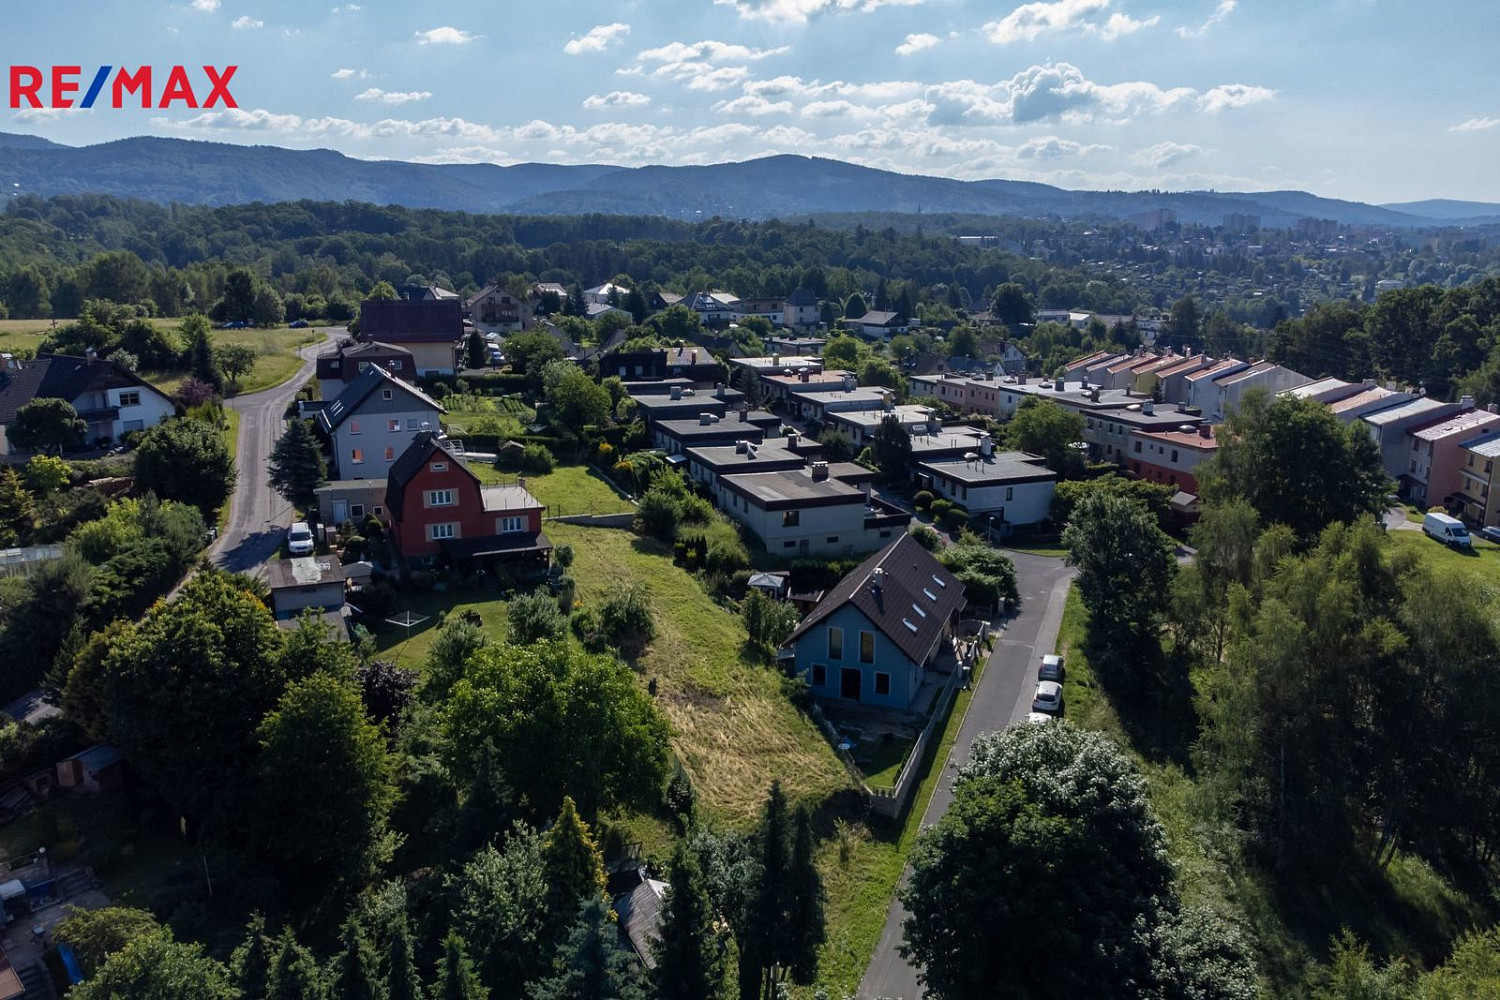 Stráž nad Nisou, okres Liberec